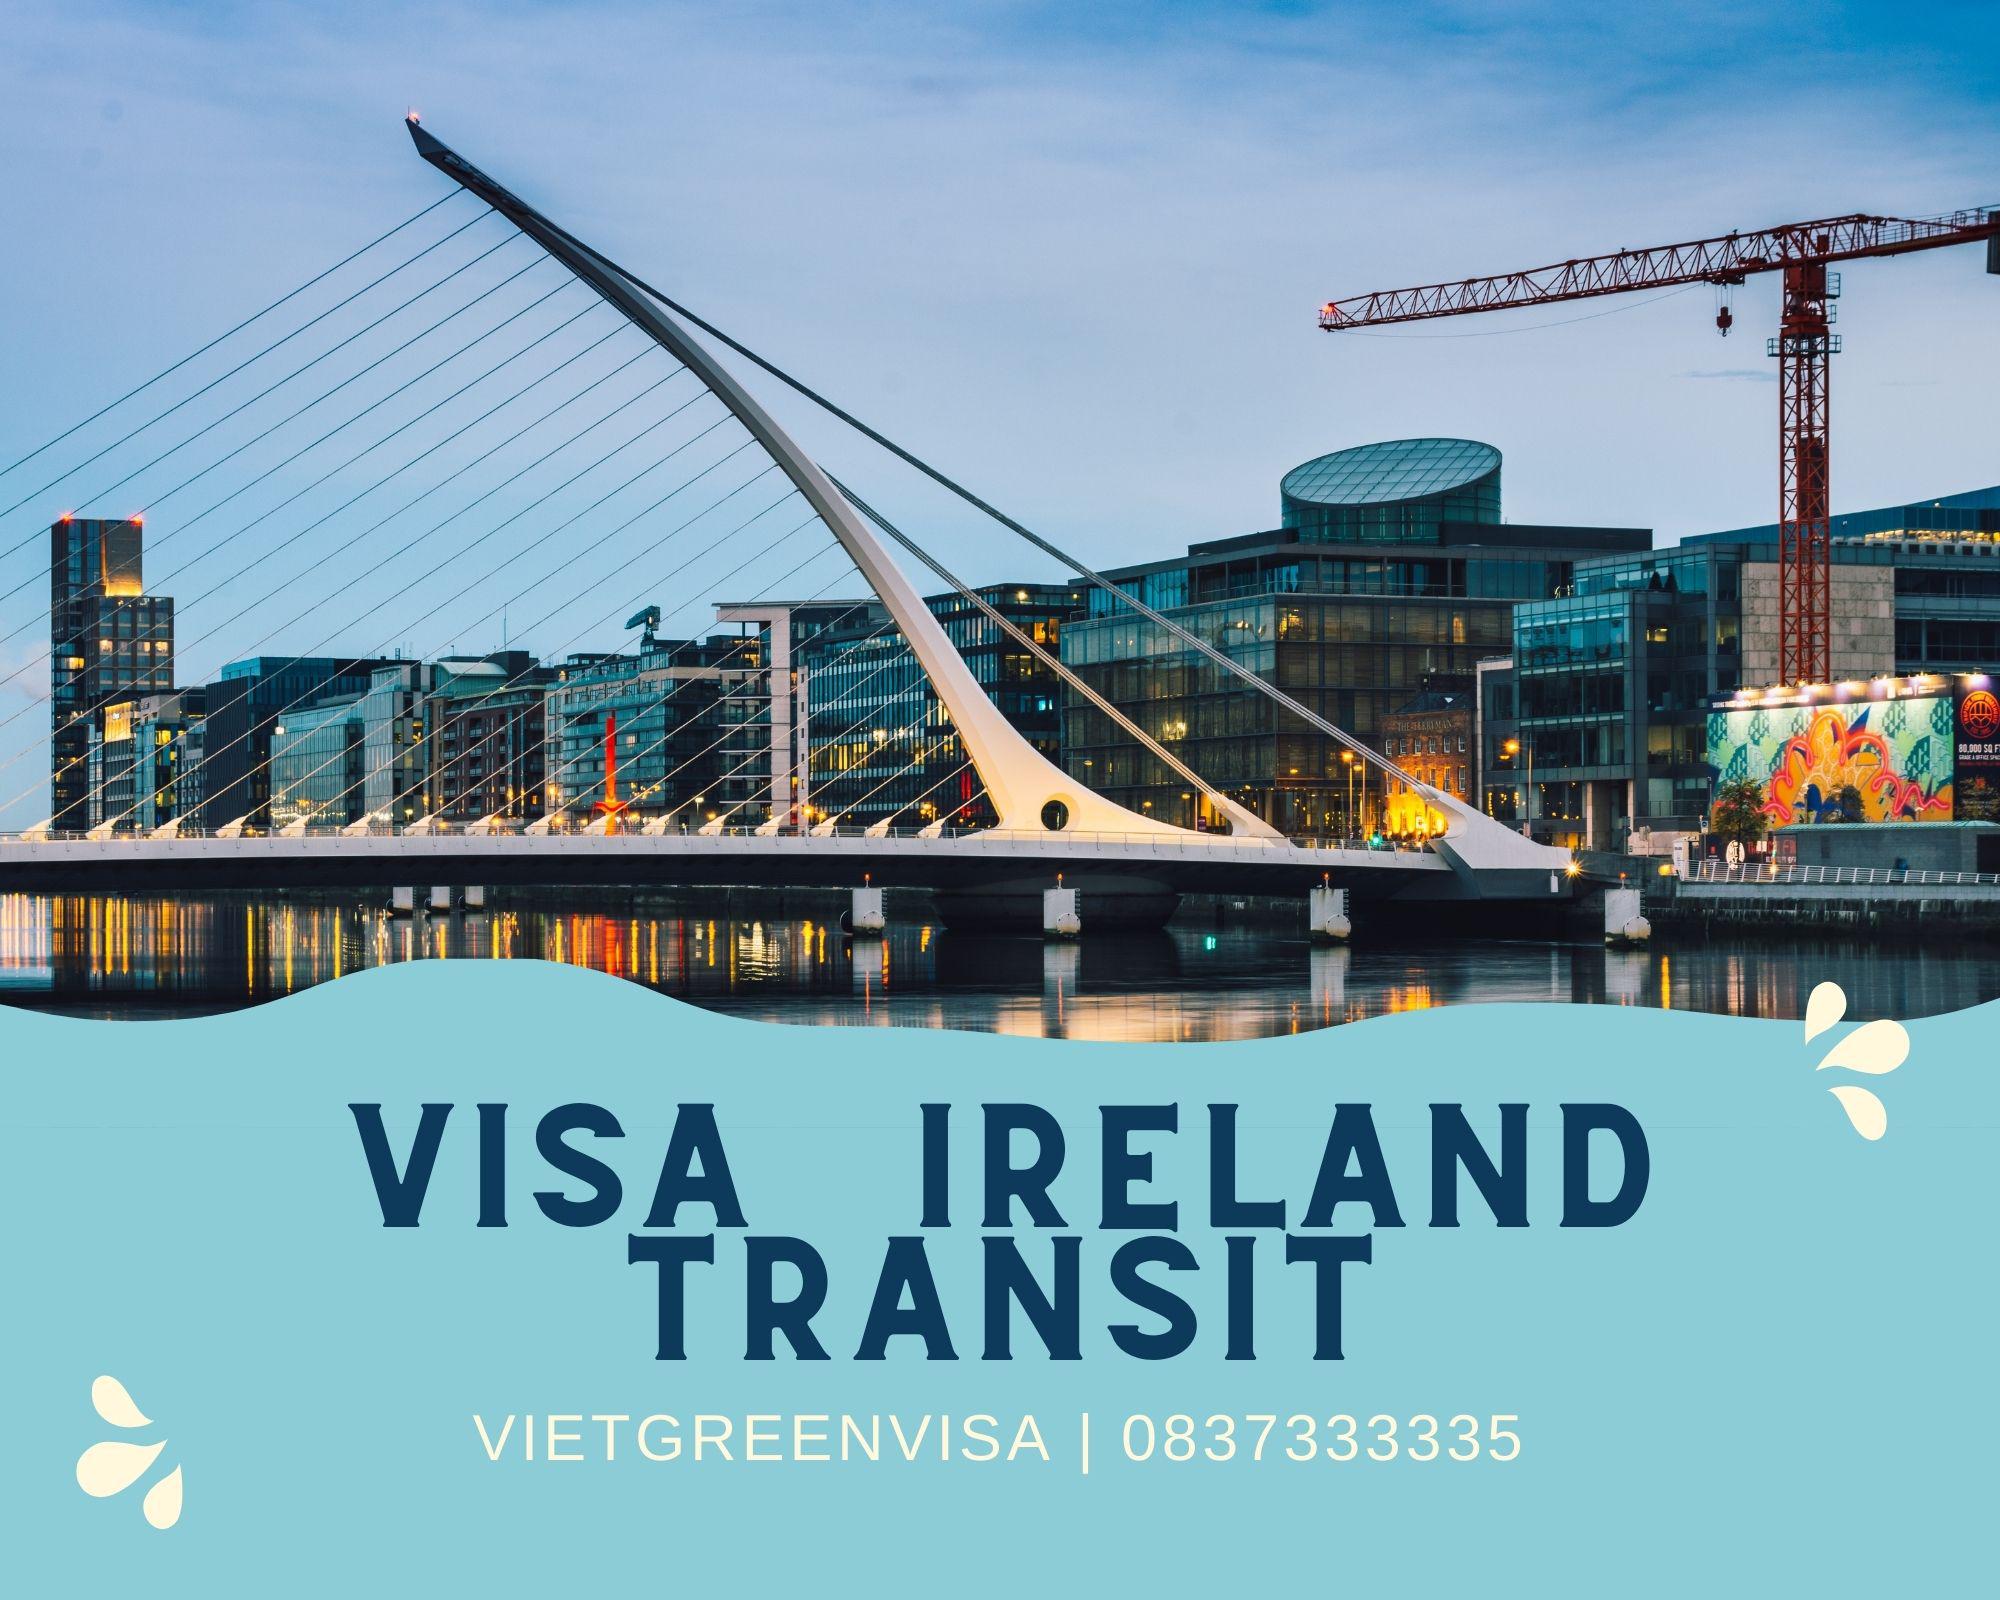 Hỗ trợ xin visa quá cảnh qua Ireland giá rẻ